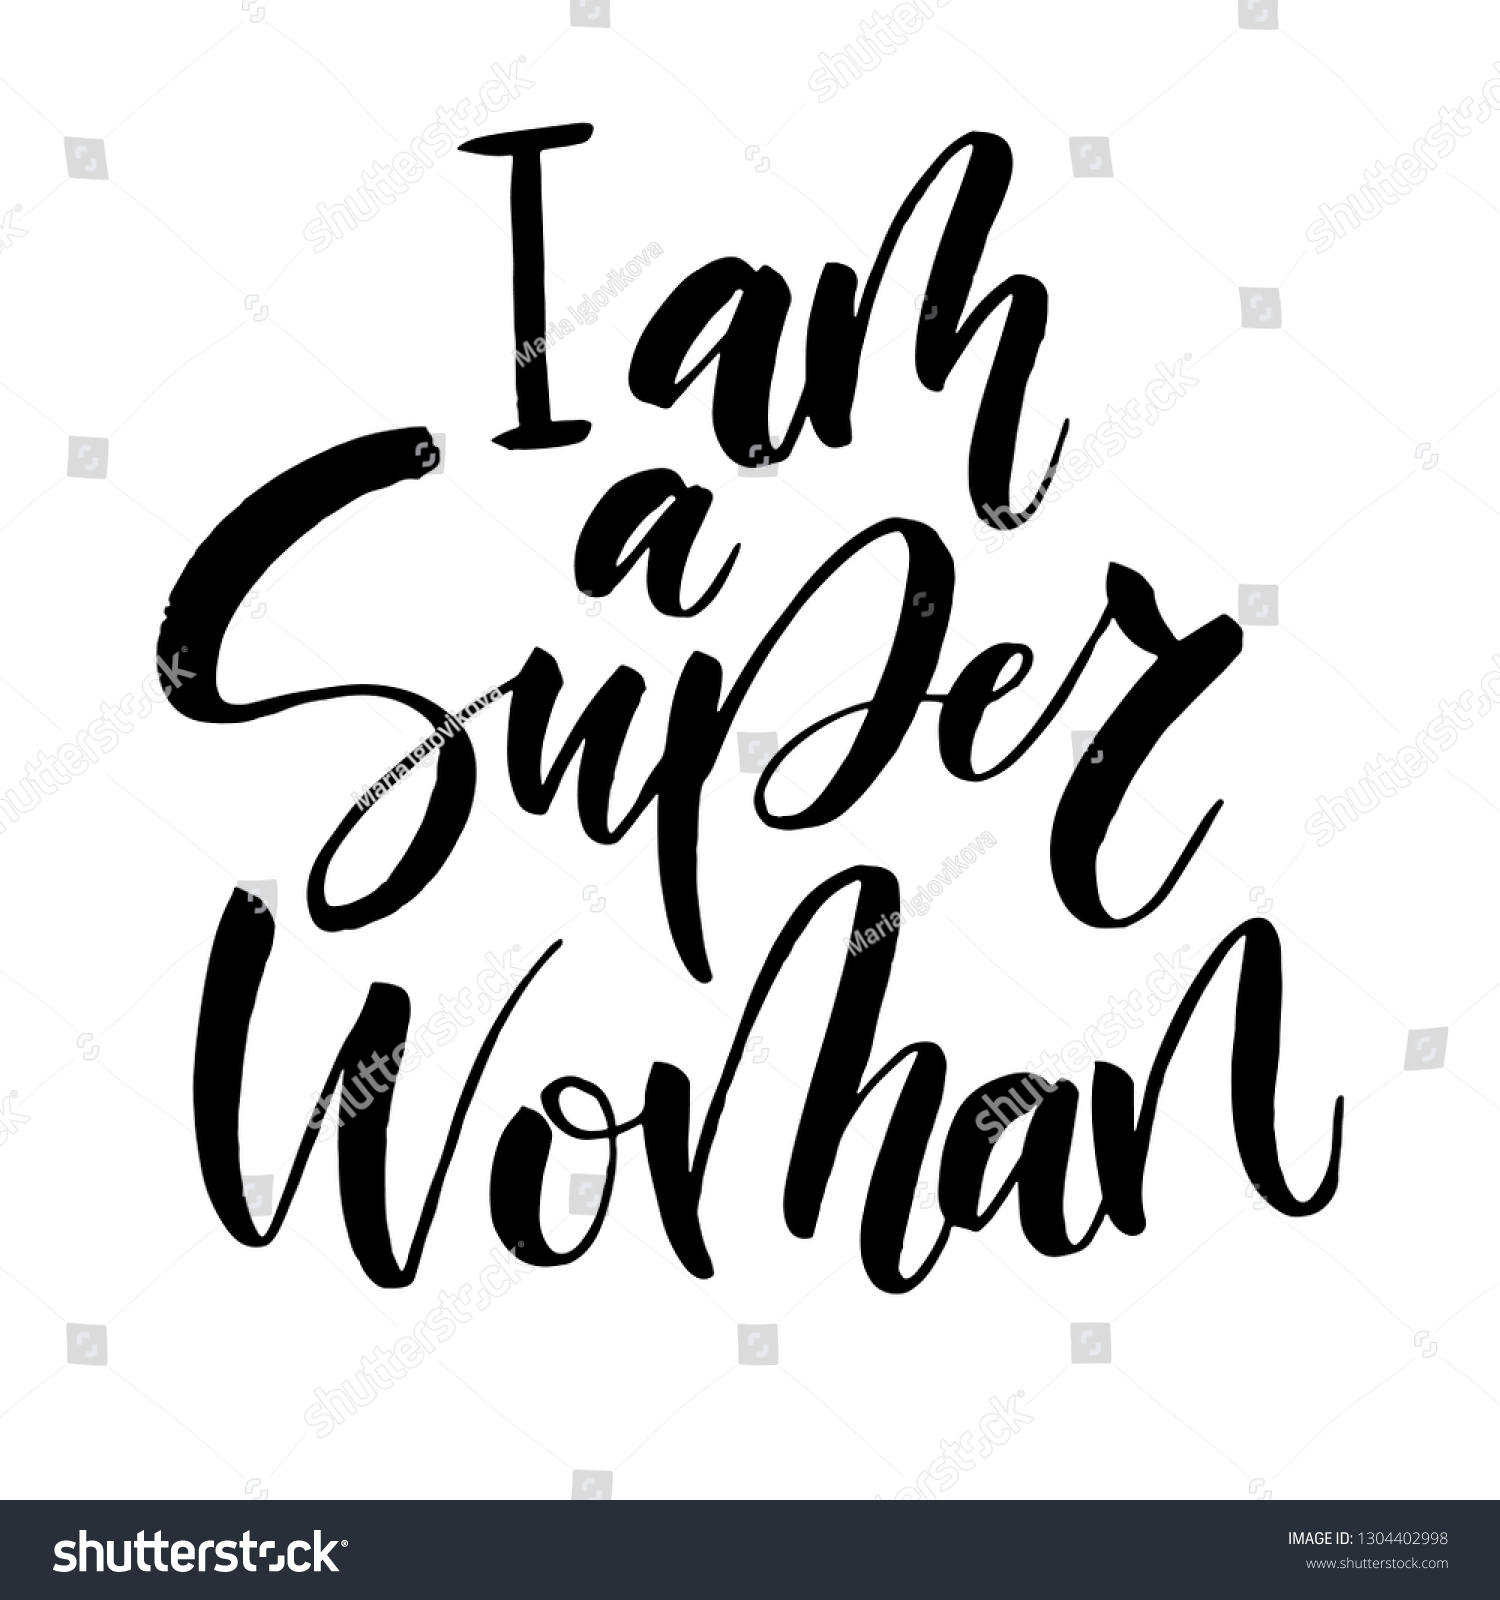 A i super girl am I Am